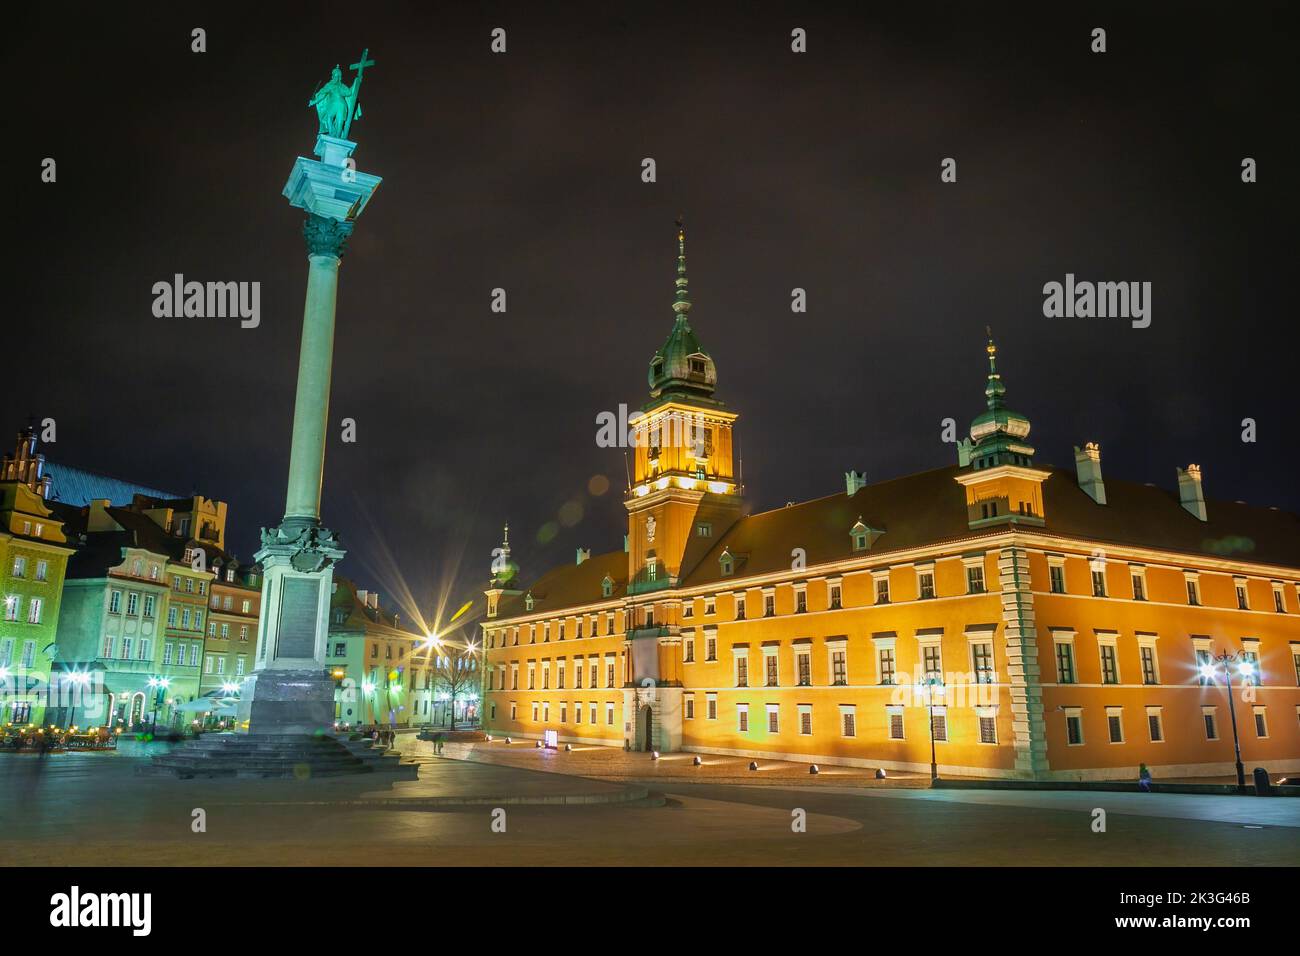 La vieille ville de Varsovie illuminée rue la nuit, Pologne, europe de l'est Banque D'Images